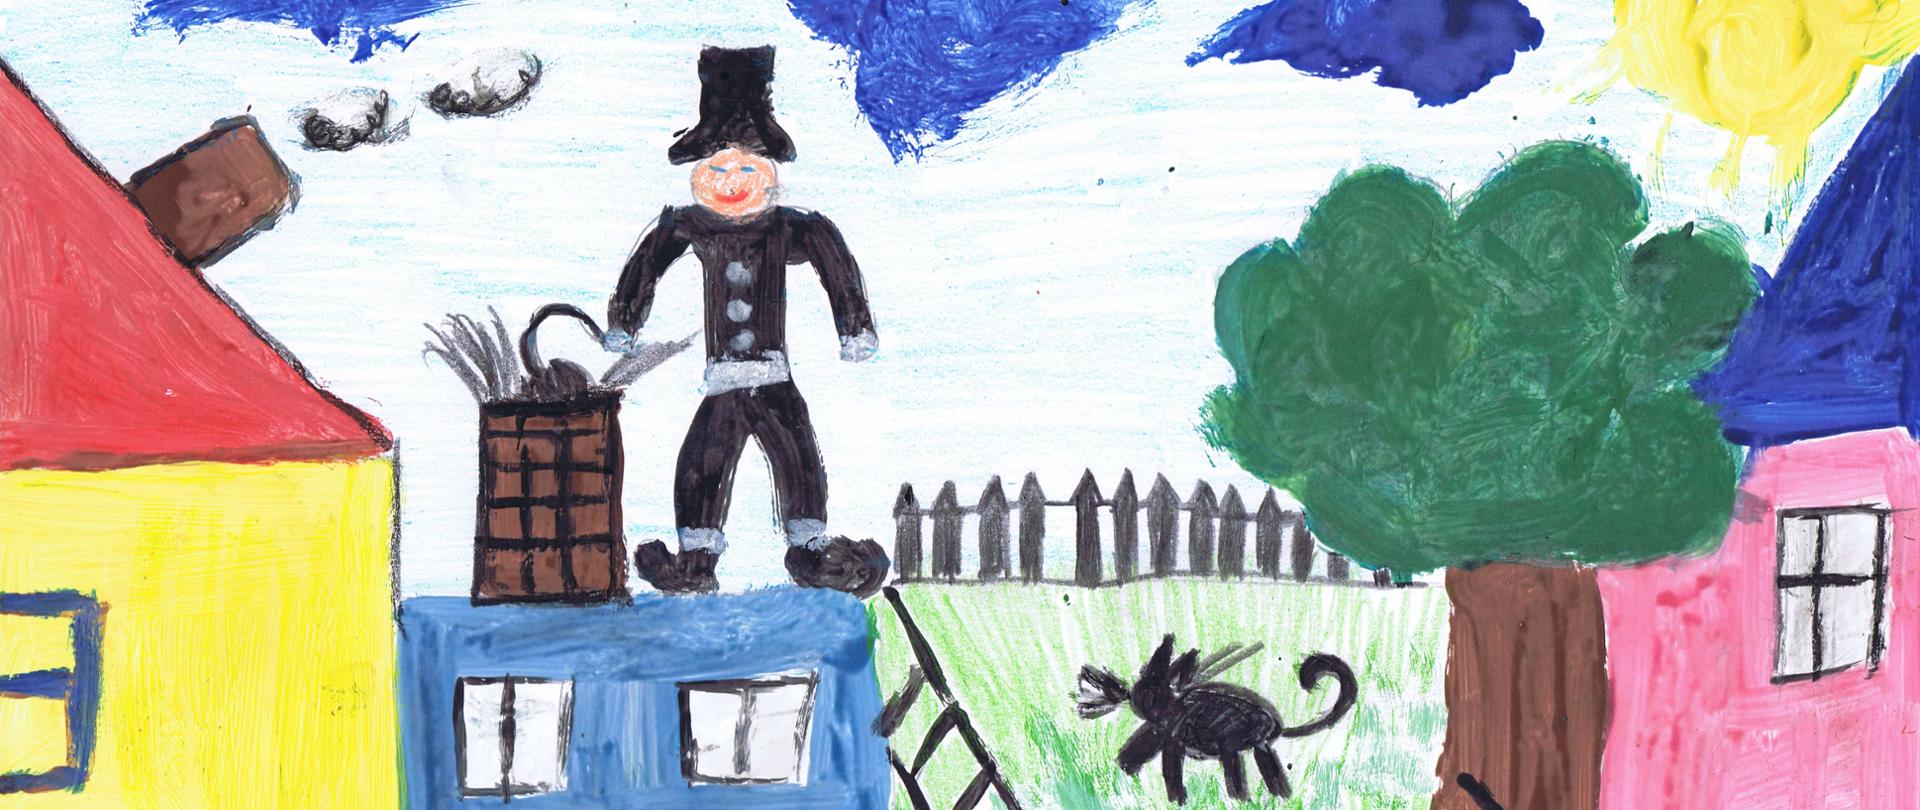 KOMINIARZ PRZYNOSI SZCZĘŚCIE - Bartosz Naskręt, lat 5, rysunek przedstawiający kominiarza stojącego na budynku i czyszczącego komin, obok kolejne domy, drzewo, na trawie kot i rower oparty o drzewo, na niebie słońce i chmurki.